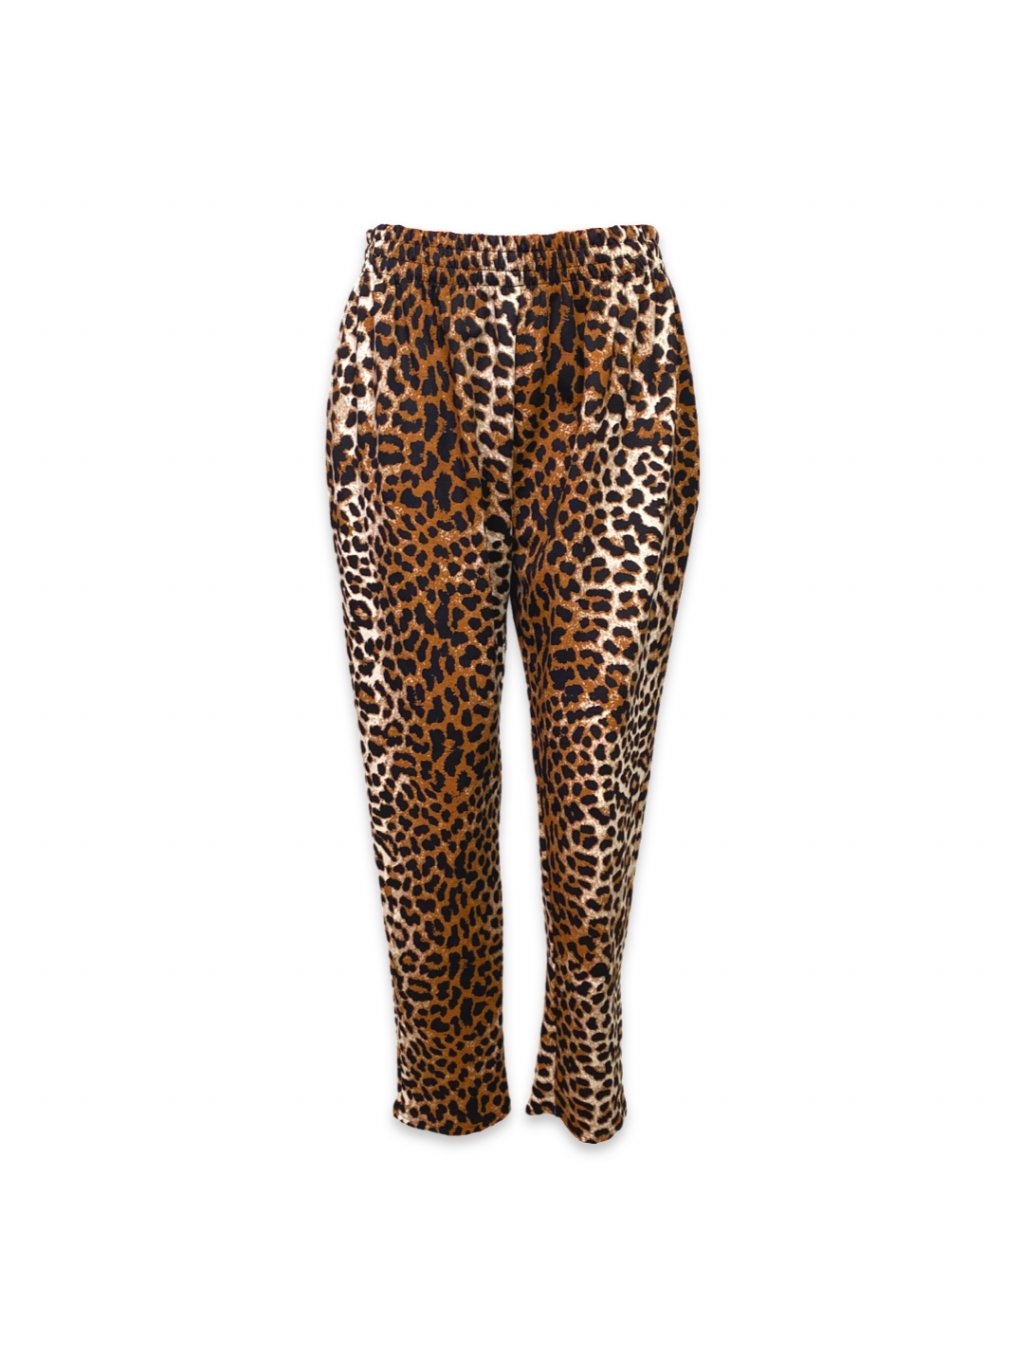 Taffi kalhoty s pružným pasem - leopardí vzor